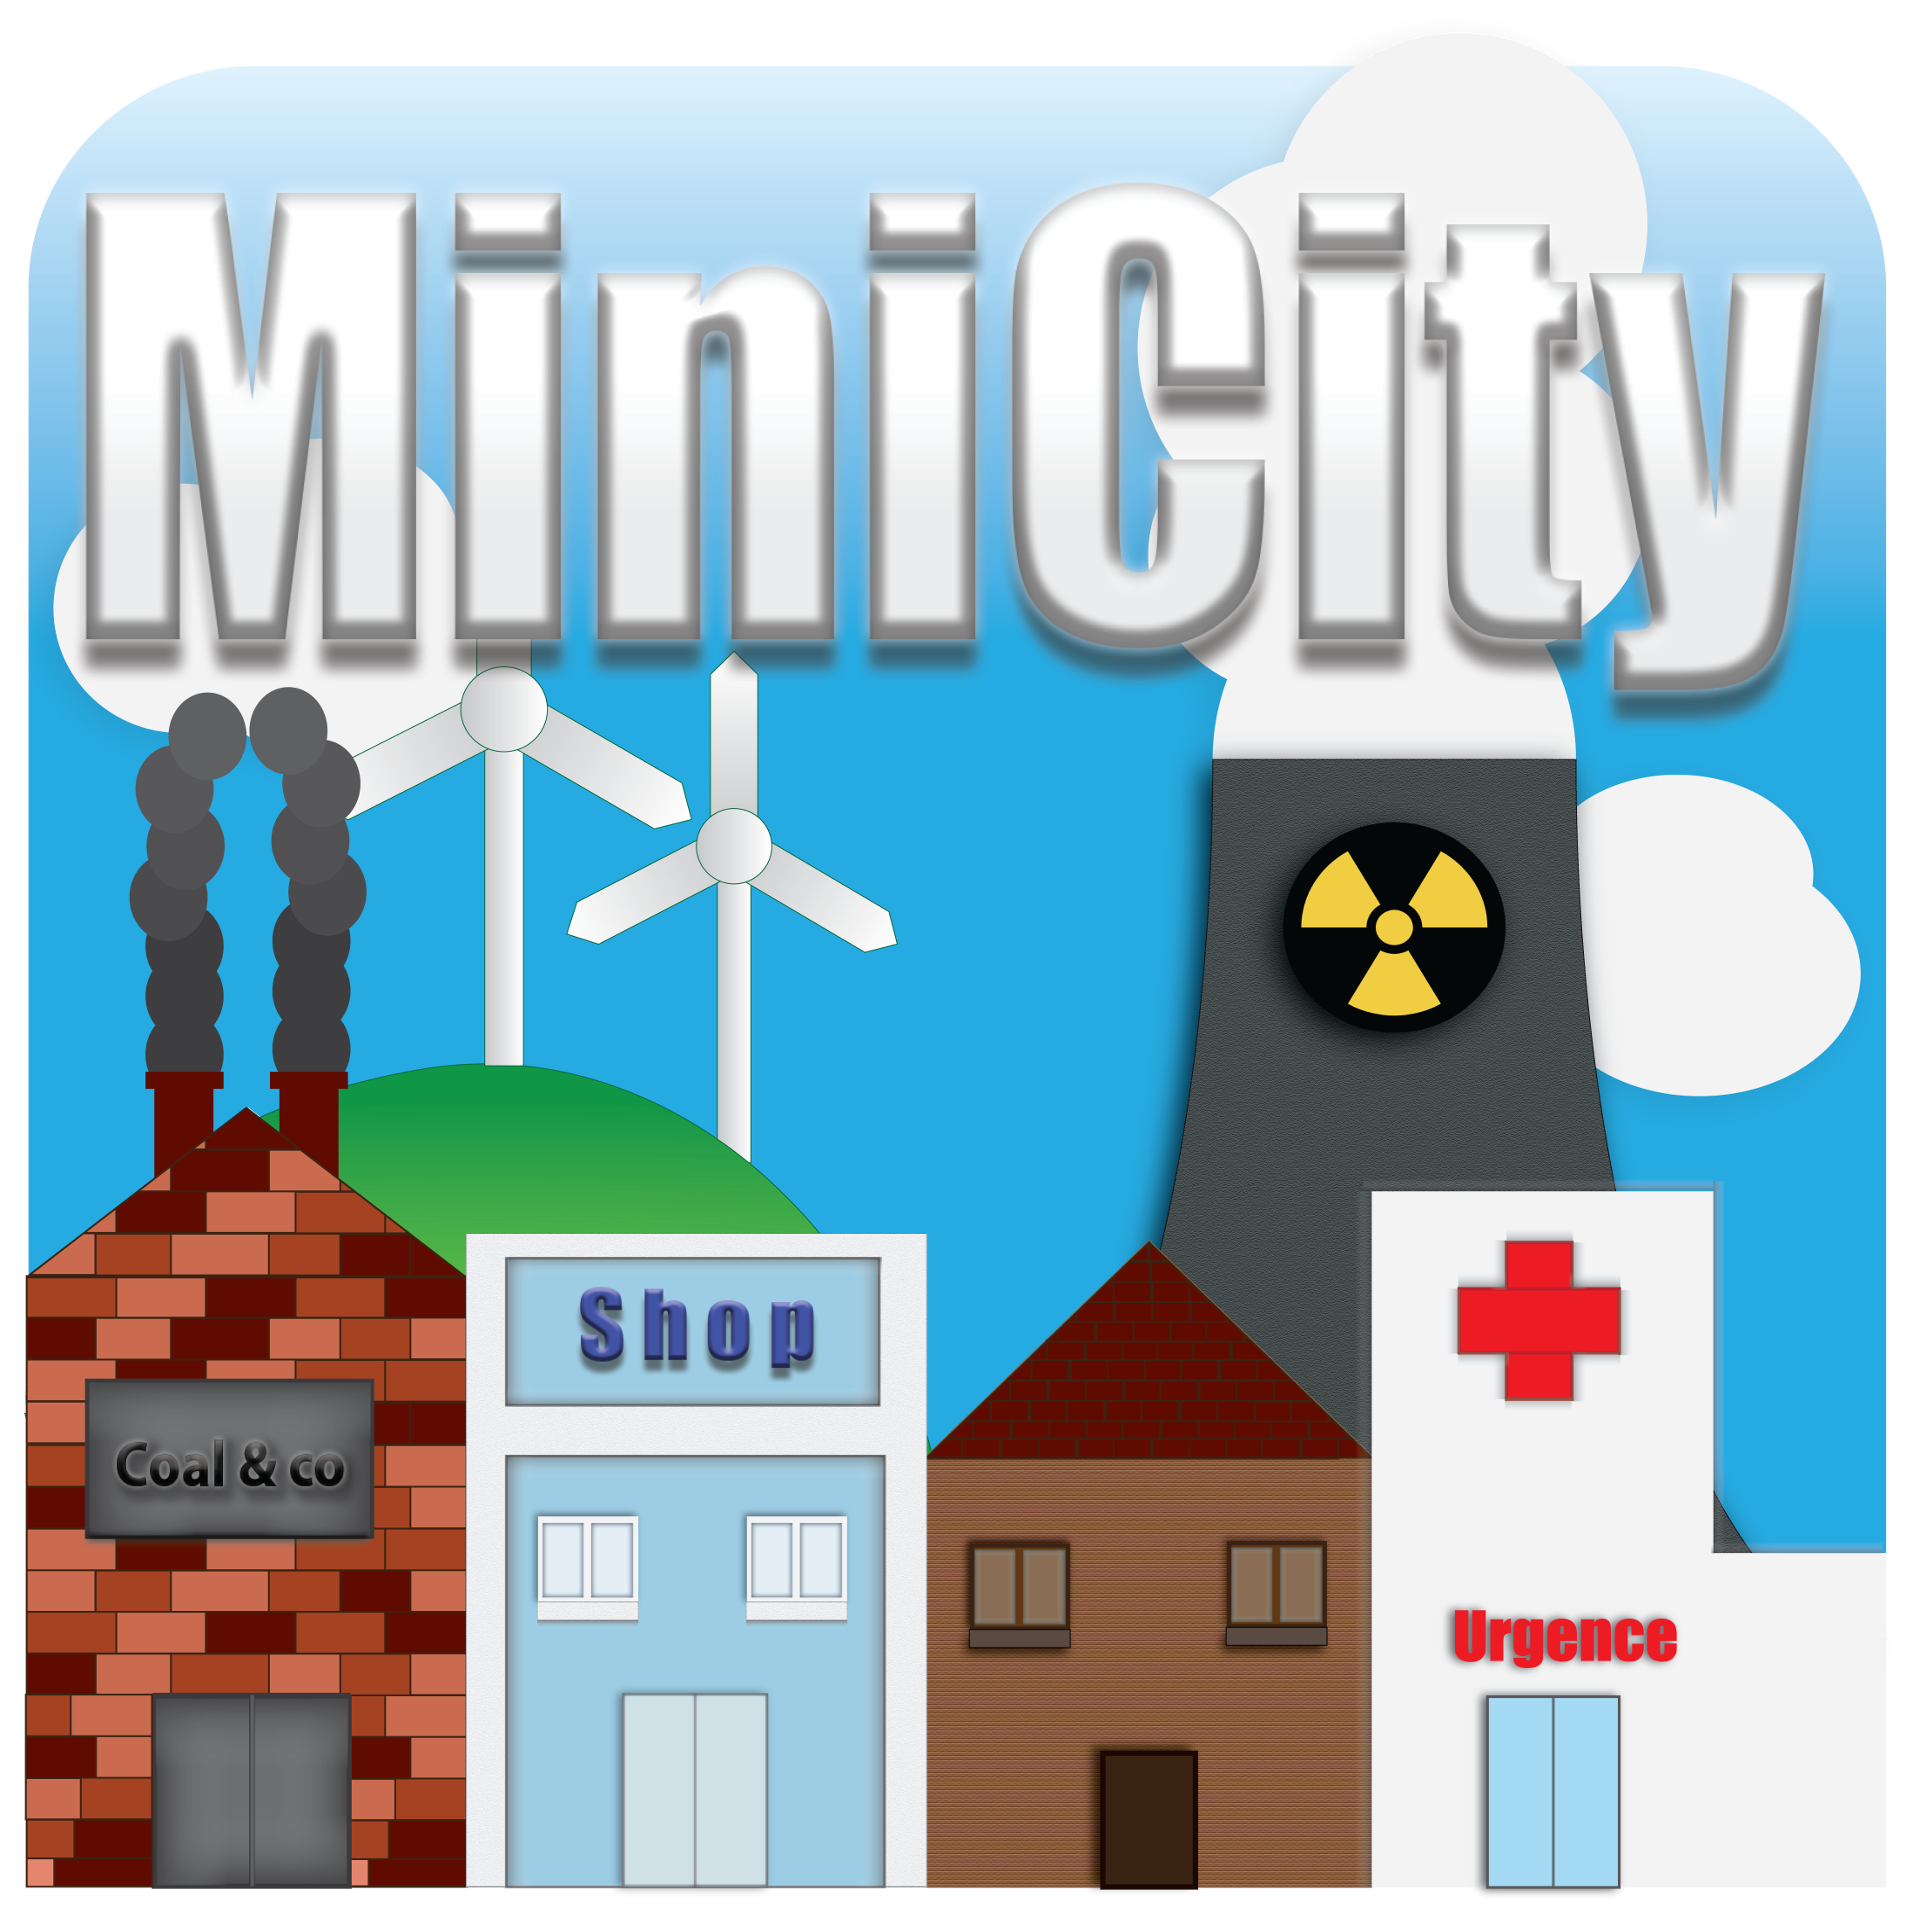 MiniCity